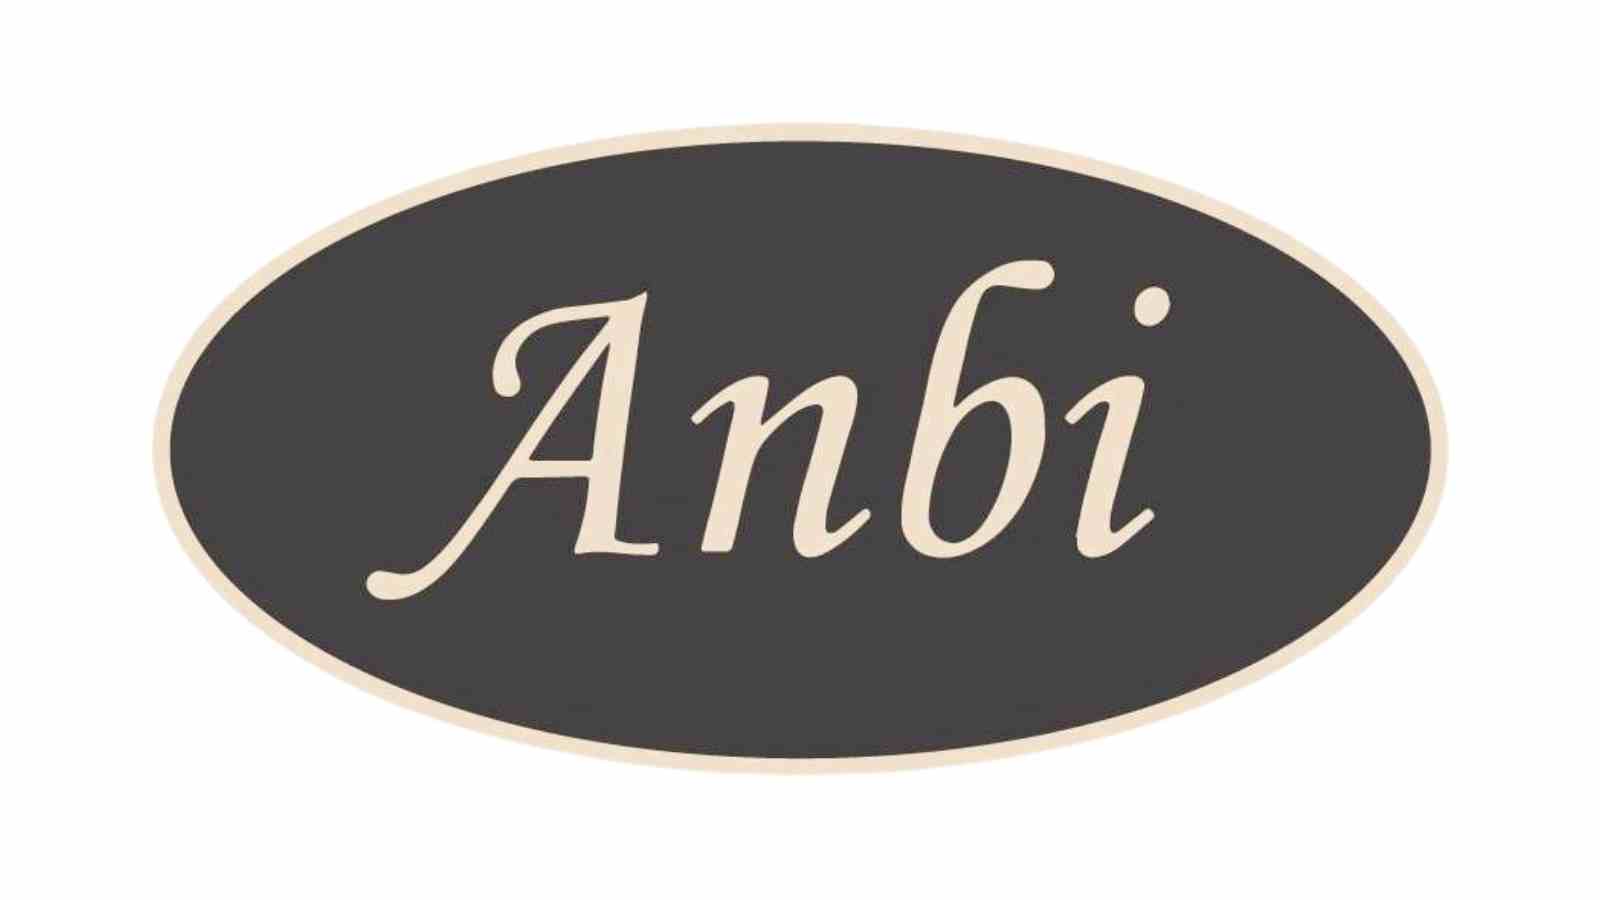 Anbi